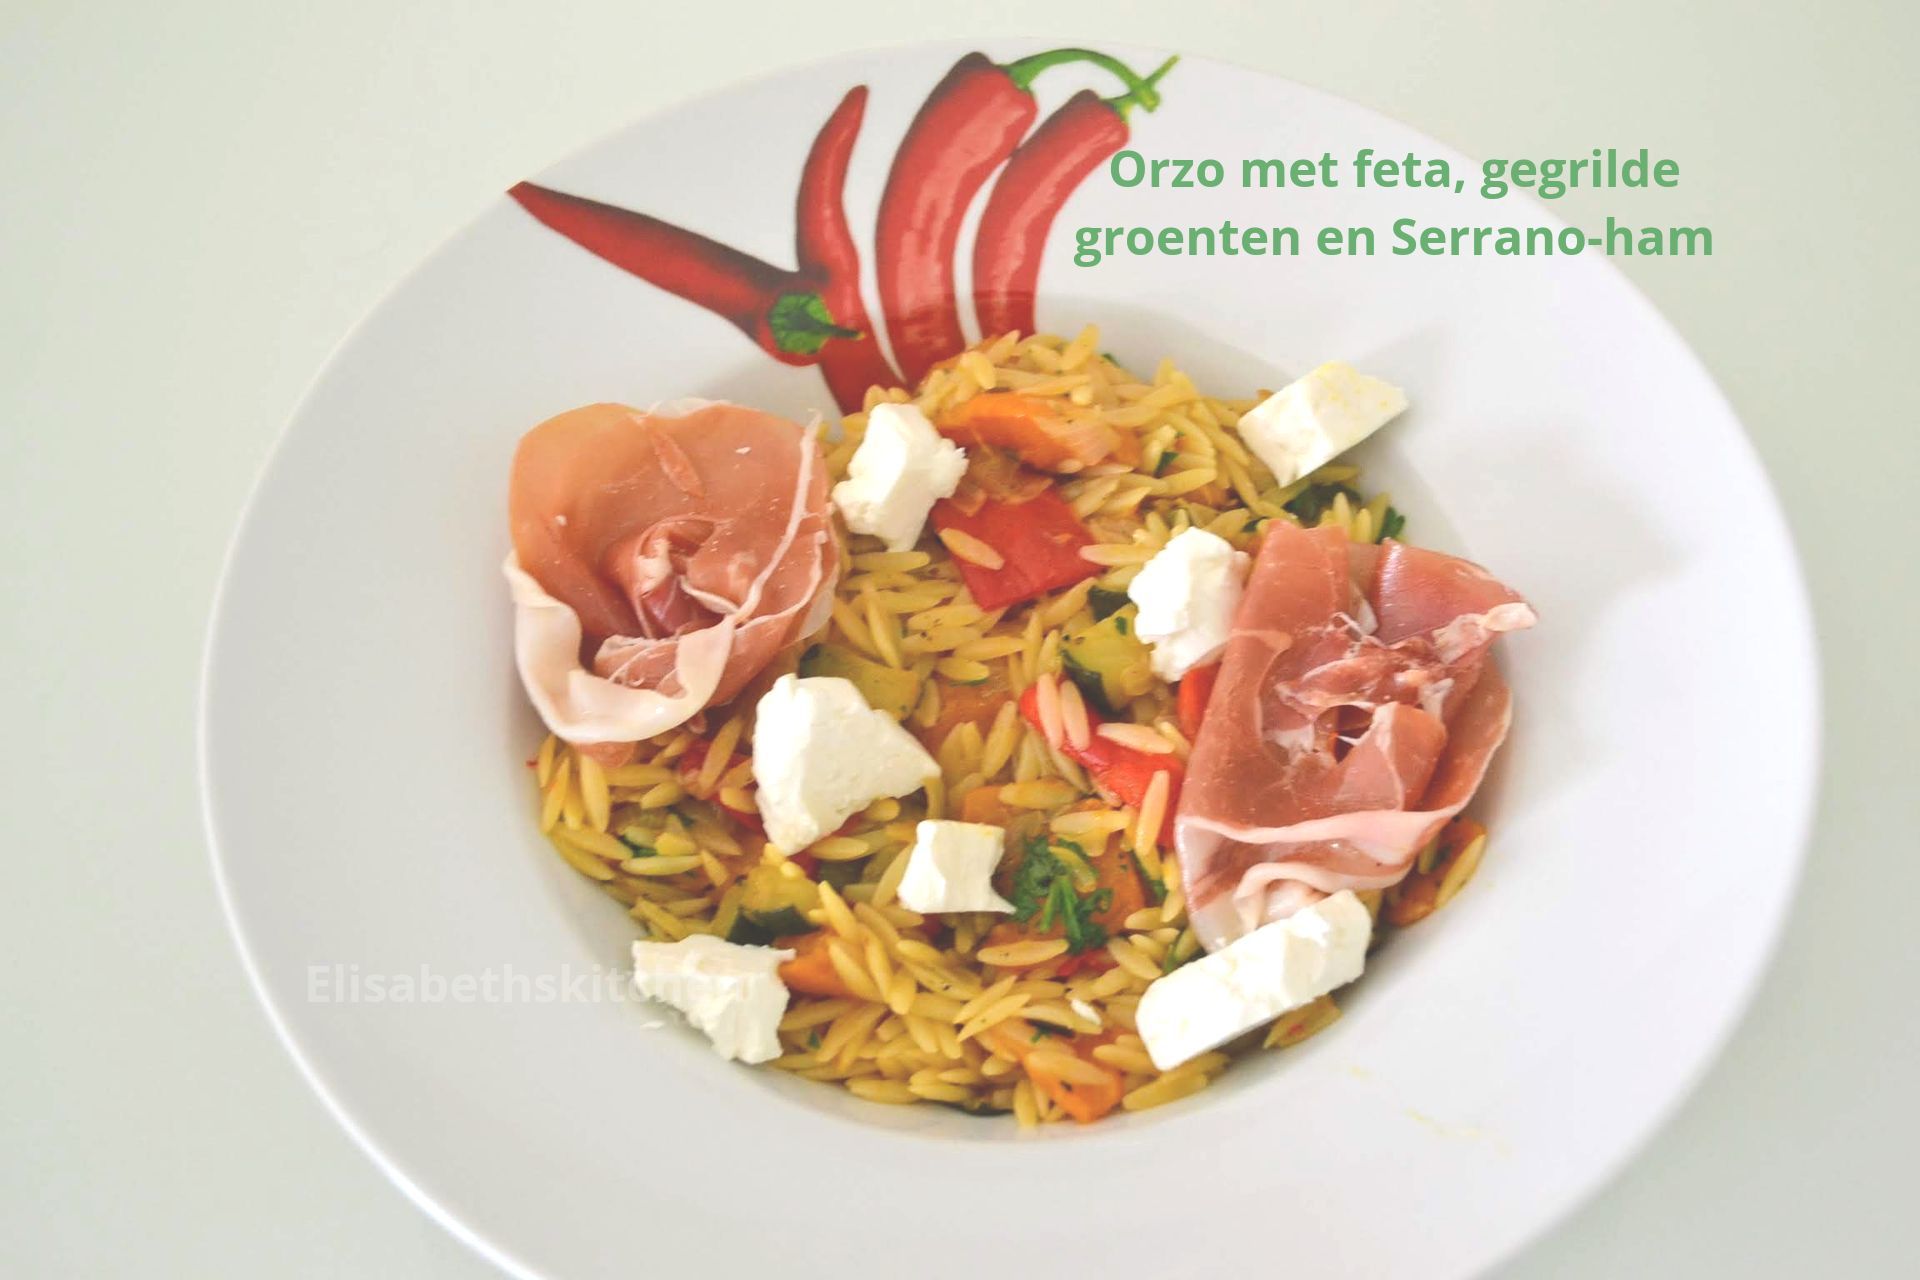 Orzo met feta, gegrilde groenten en Serrano-ham